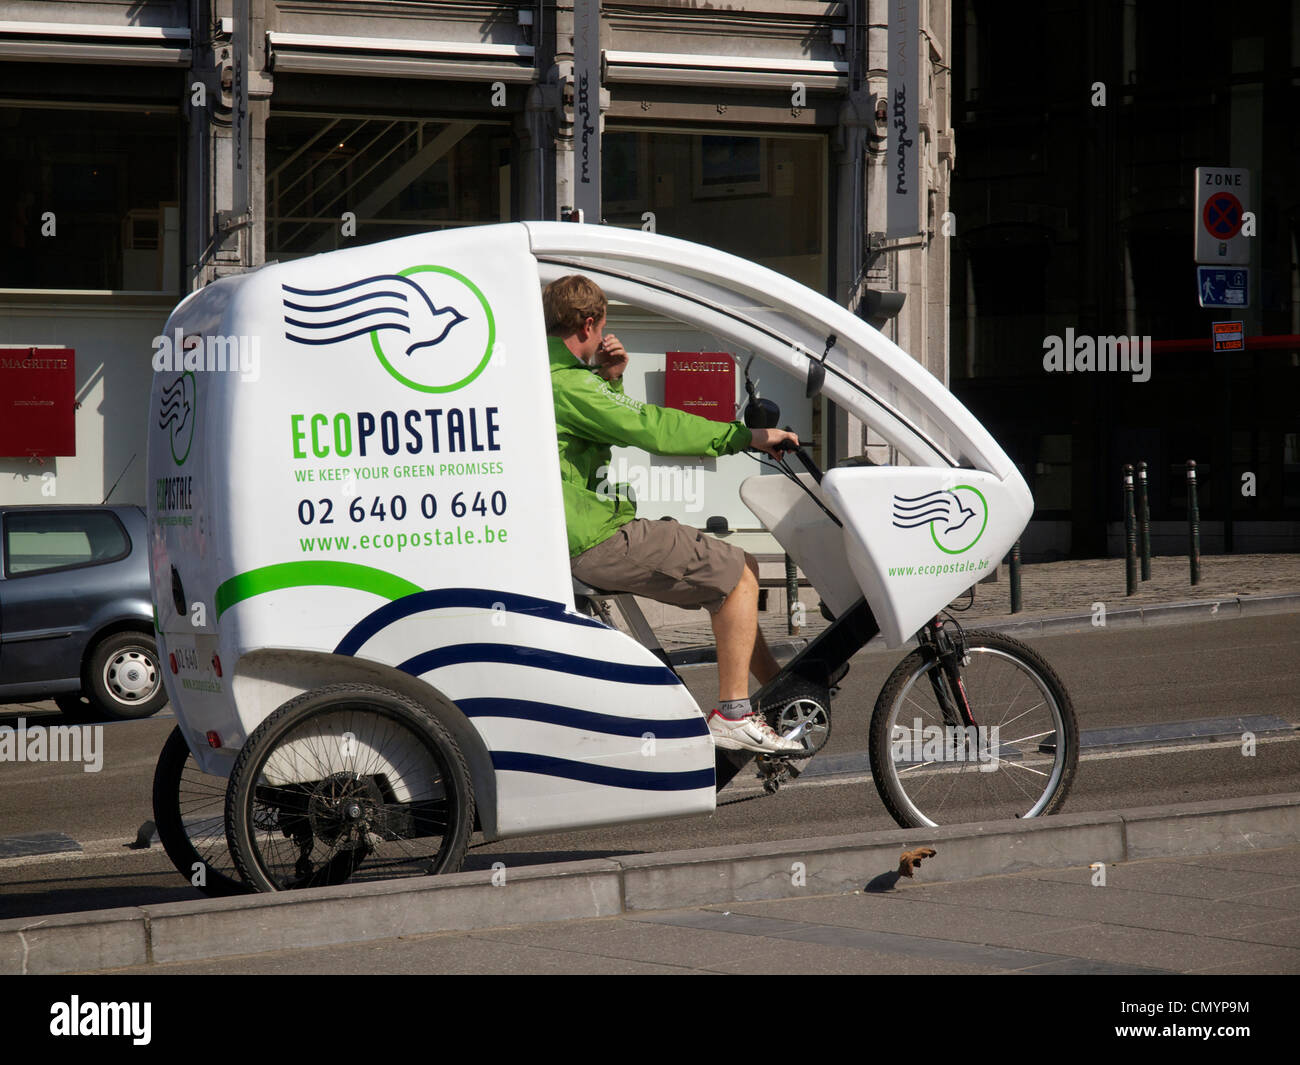 Les droits de l'Ecopostale powered mail zéro émission véhicule de livraison à Bruxelles, Belgique Banque D'Images